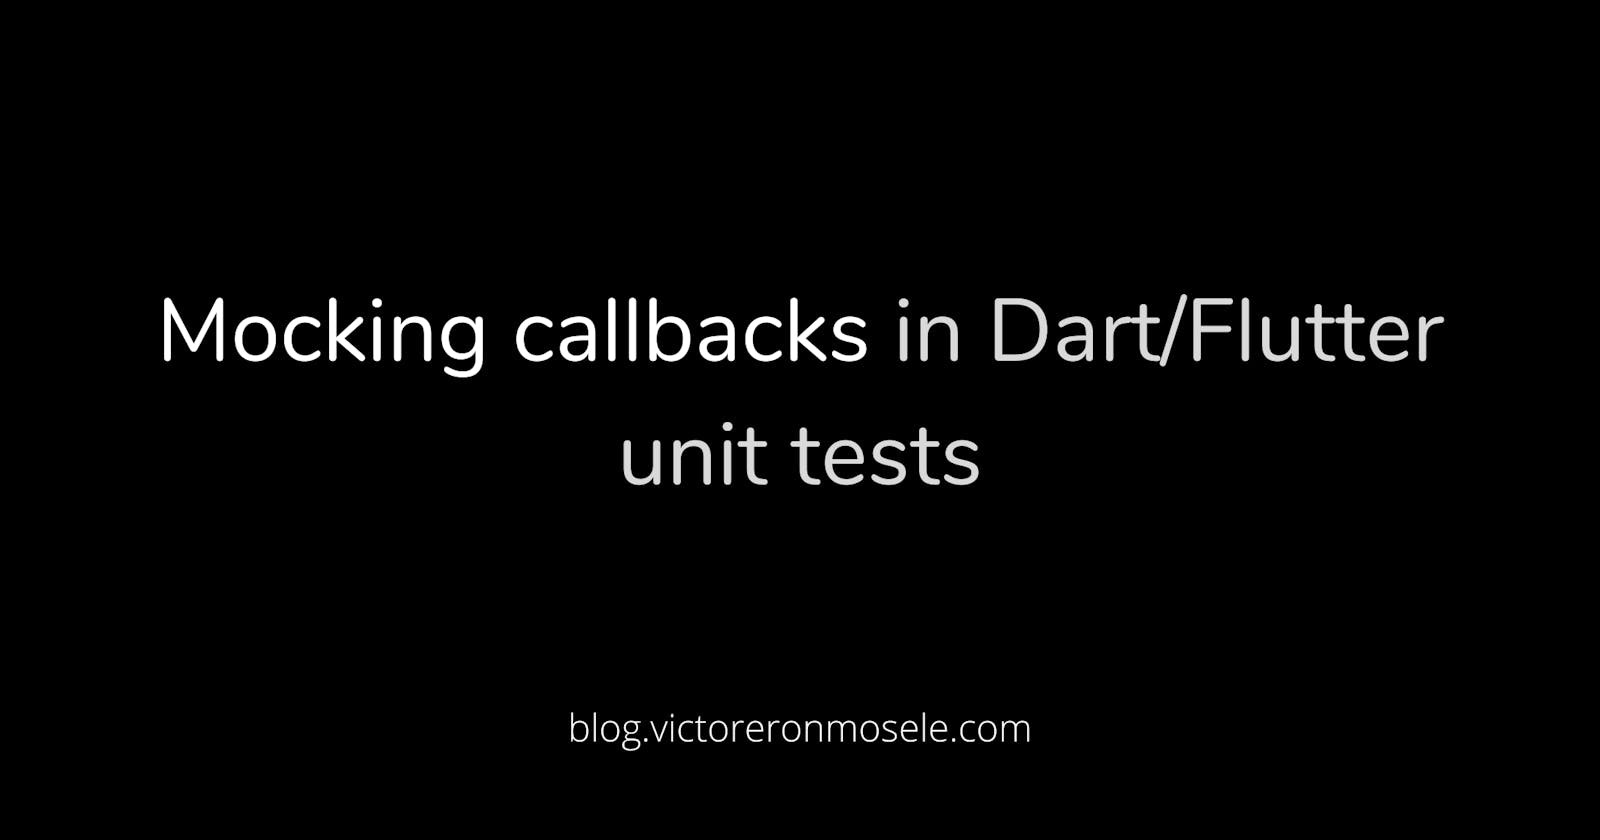 Mocking callbacks in Dart/Flutter unit tests